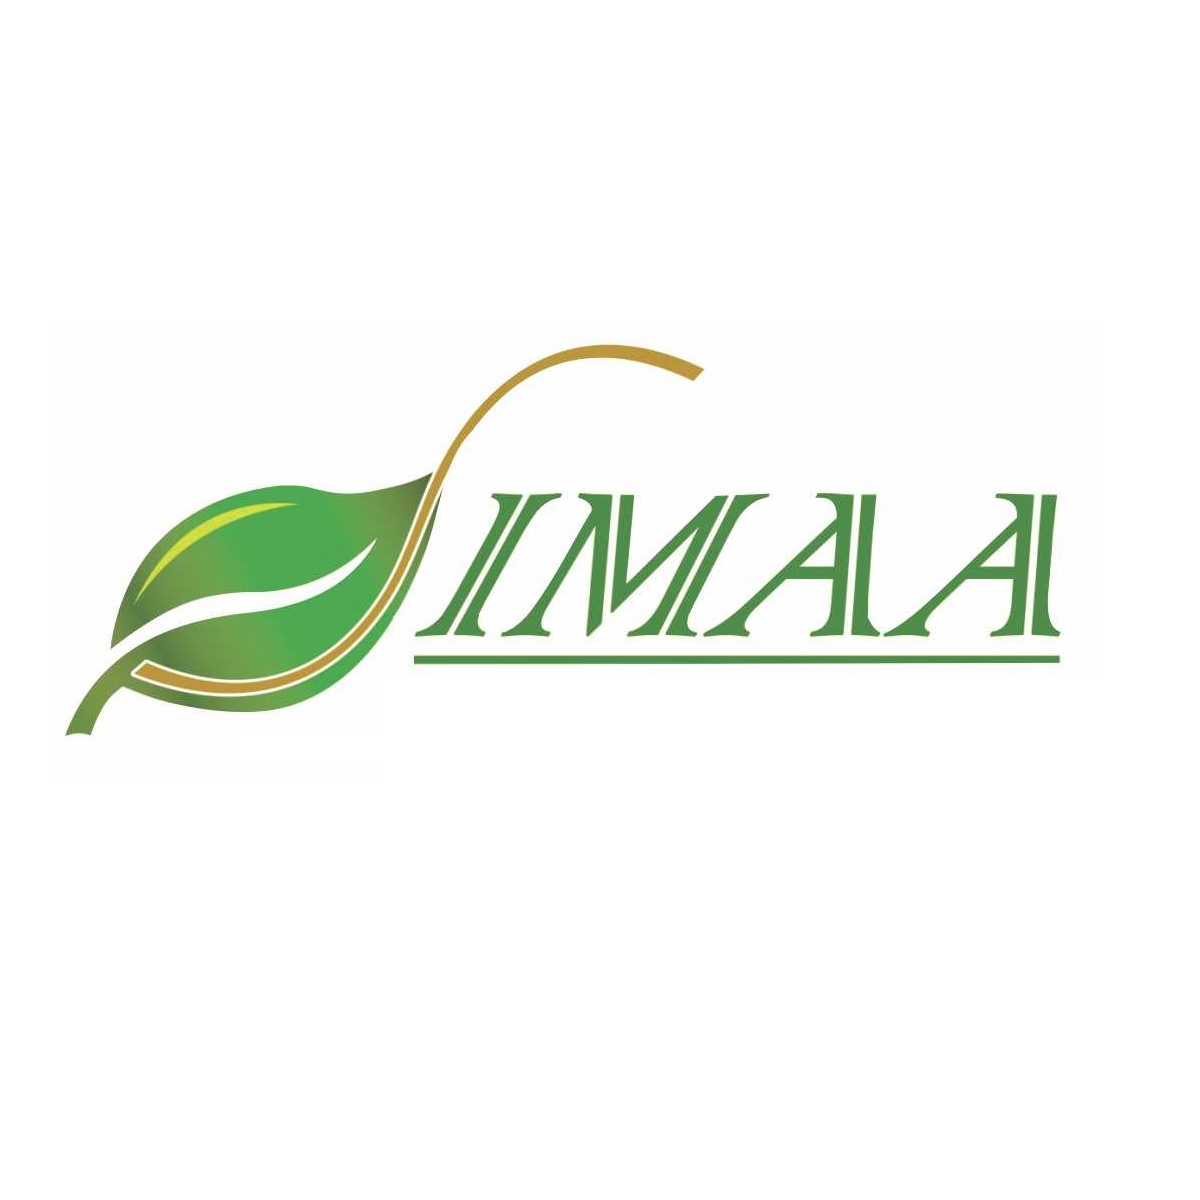 Servicios de Ingeniería, Mantenimiento y Asesoria Ambiental/SIMAA Servicios